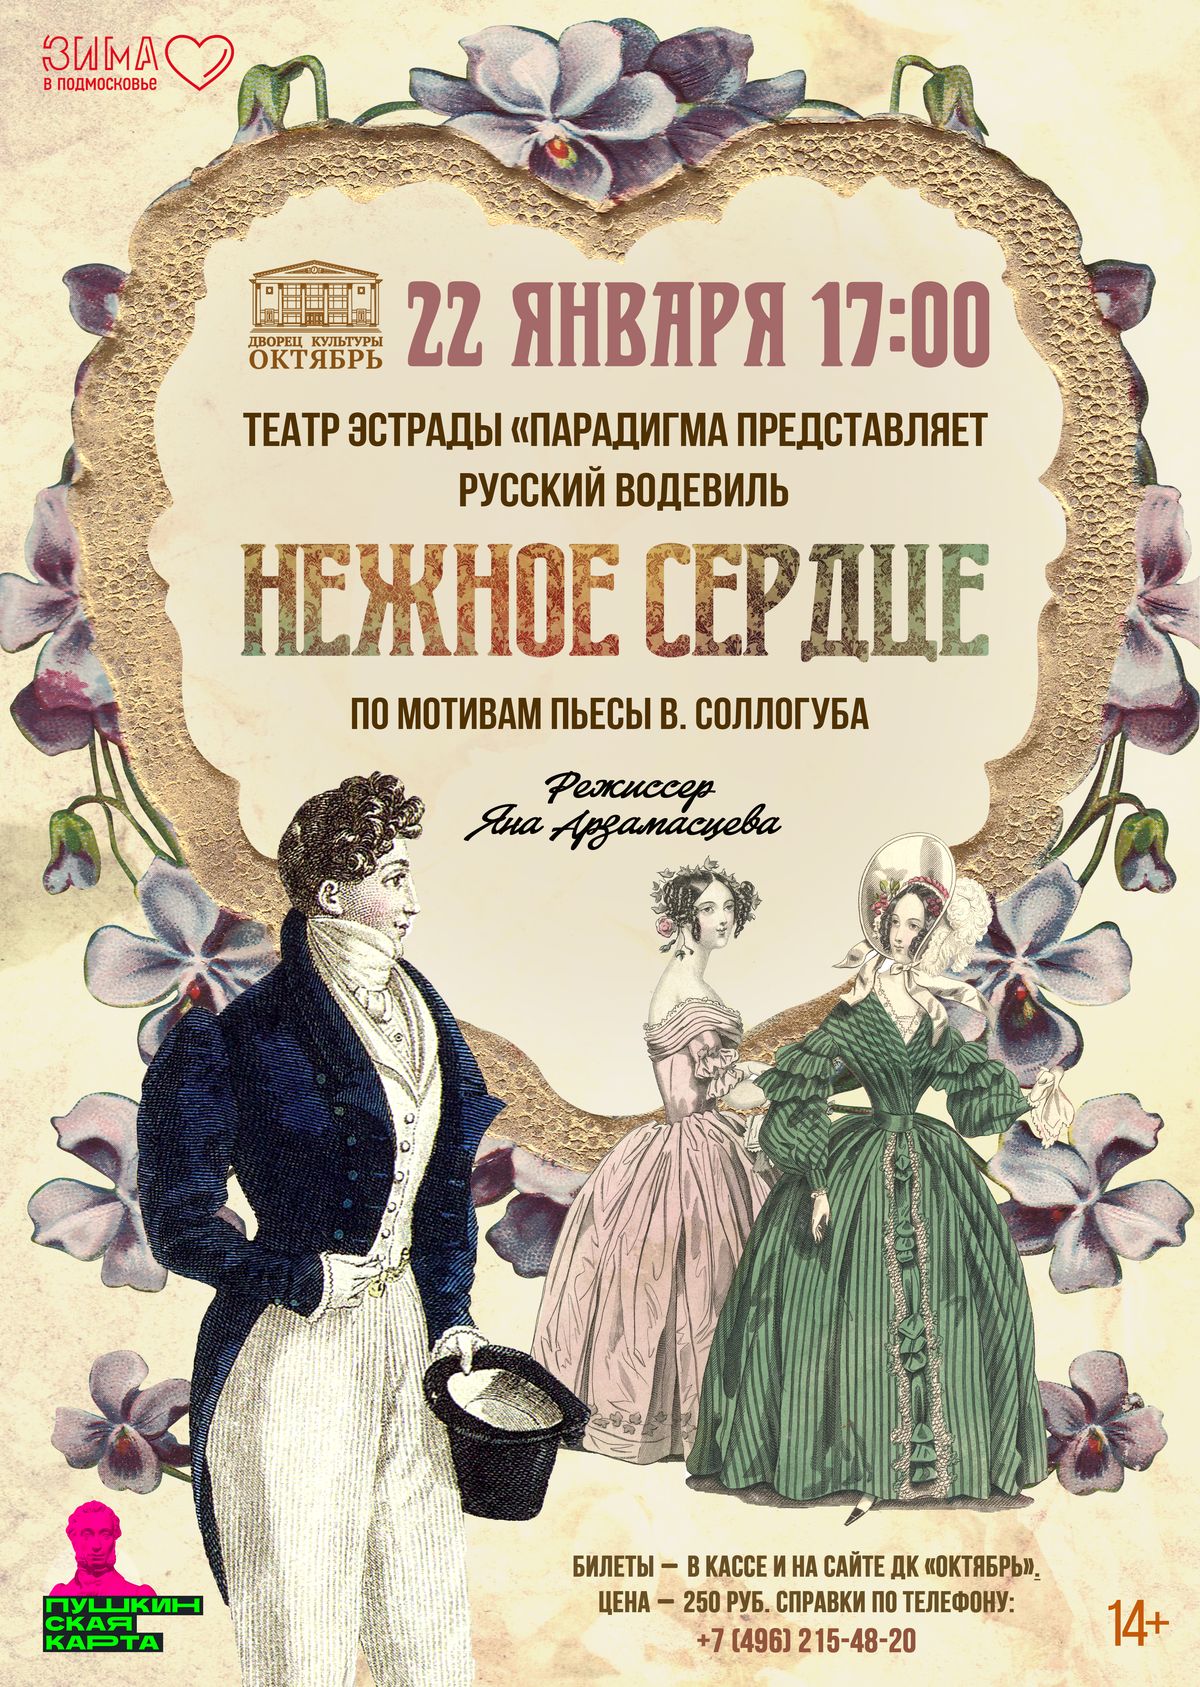 ВНИМАНИЕ! Спектакль театра эстрады «Парадигма» НЕЖНОЕ СЕРДЦЕ» с 22 января переносится на 12 ФЕВРАЛЯ 17.00 Билет можно приобрести по Пушкинской карте!